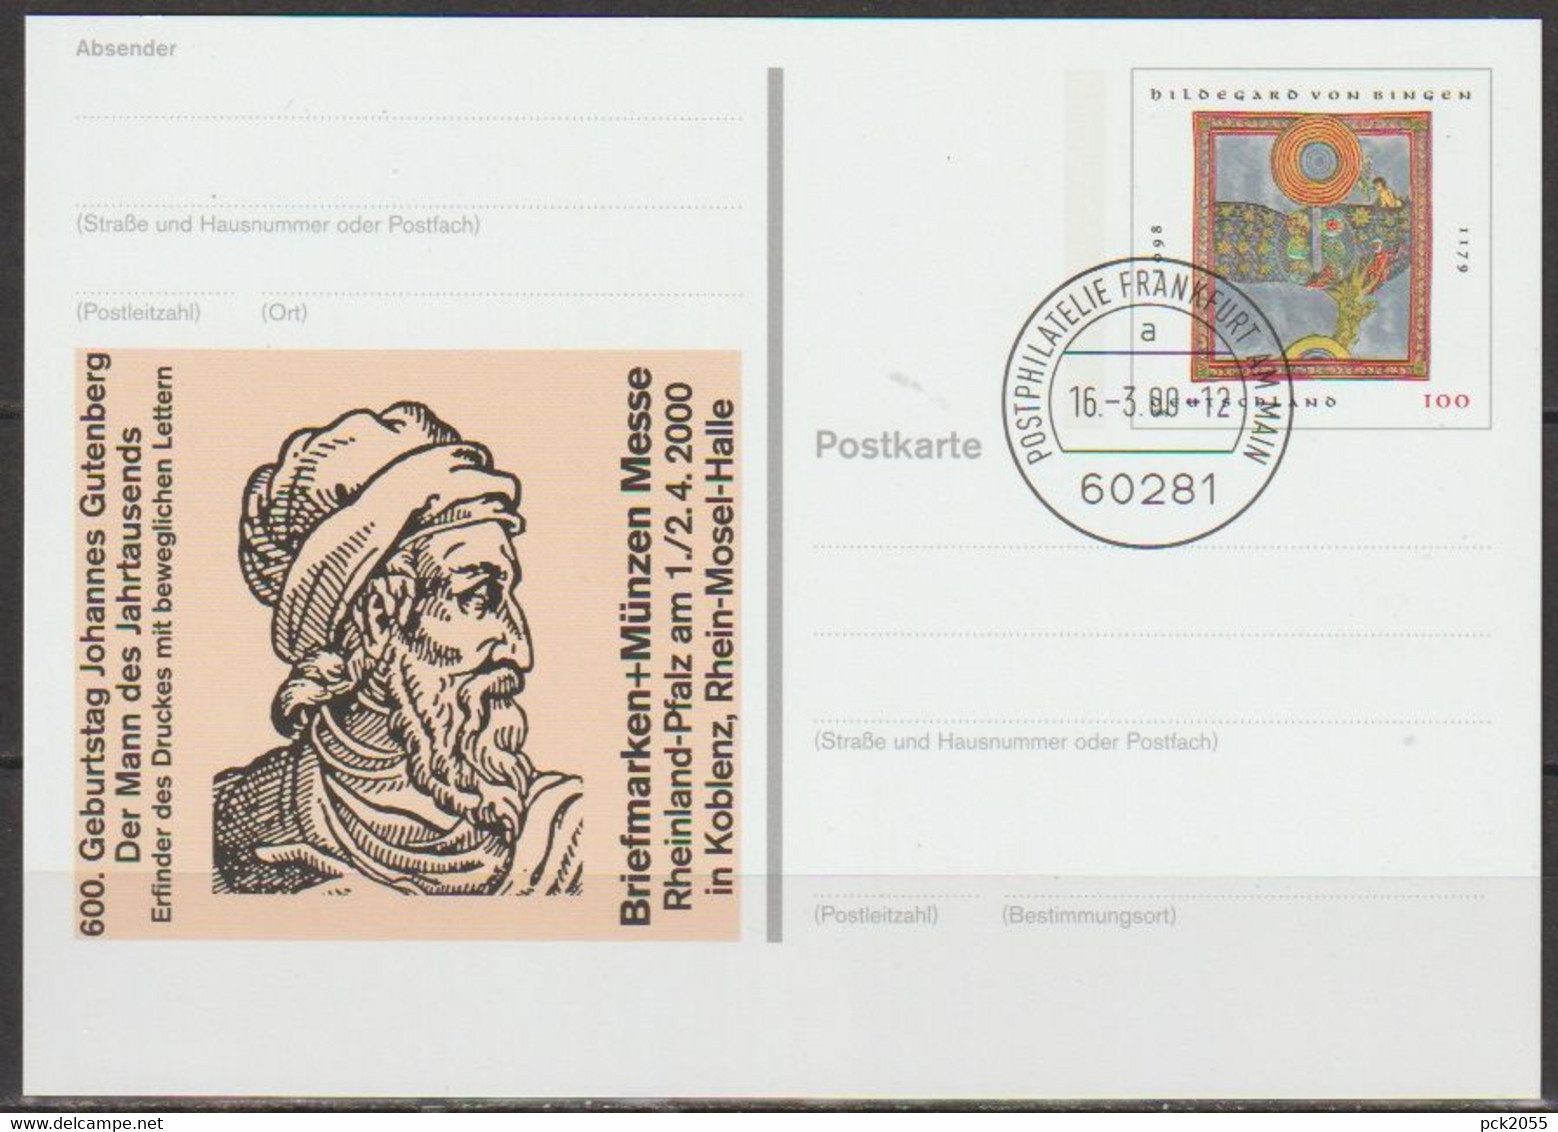 BRD Ganzsache 2000 PSo66 Münchner Briefmarkentage EST. 16.3.00 Postphilatelie Frankfurt(d3939)günstige Versandkosten - Postkarten - Gebraucht